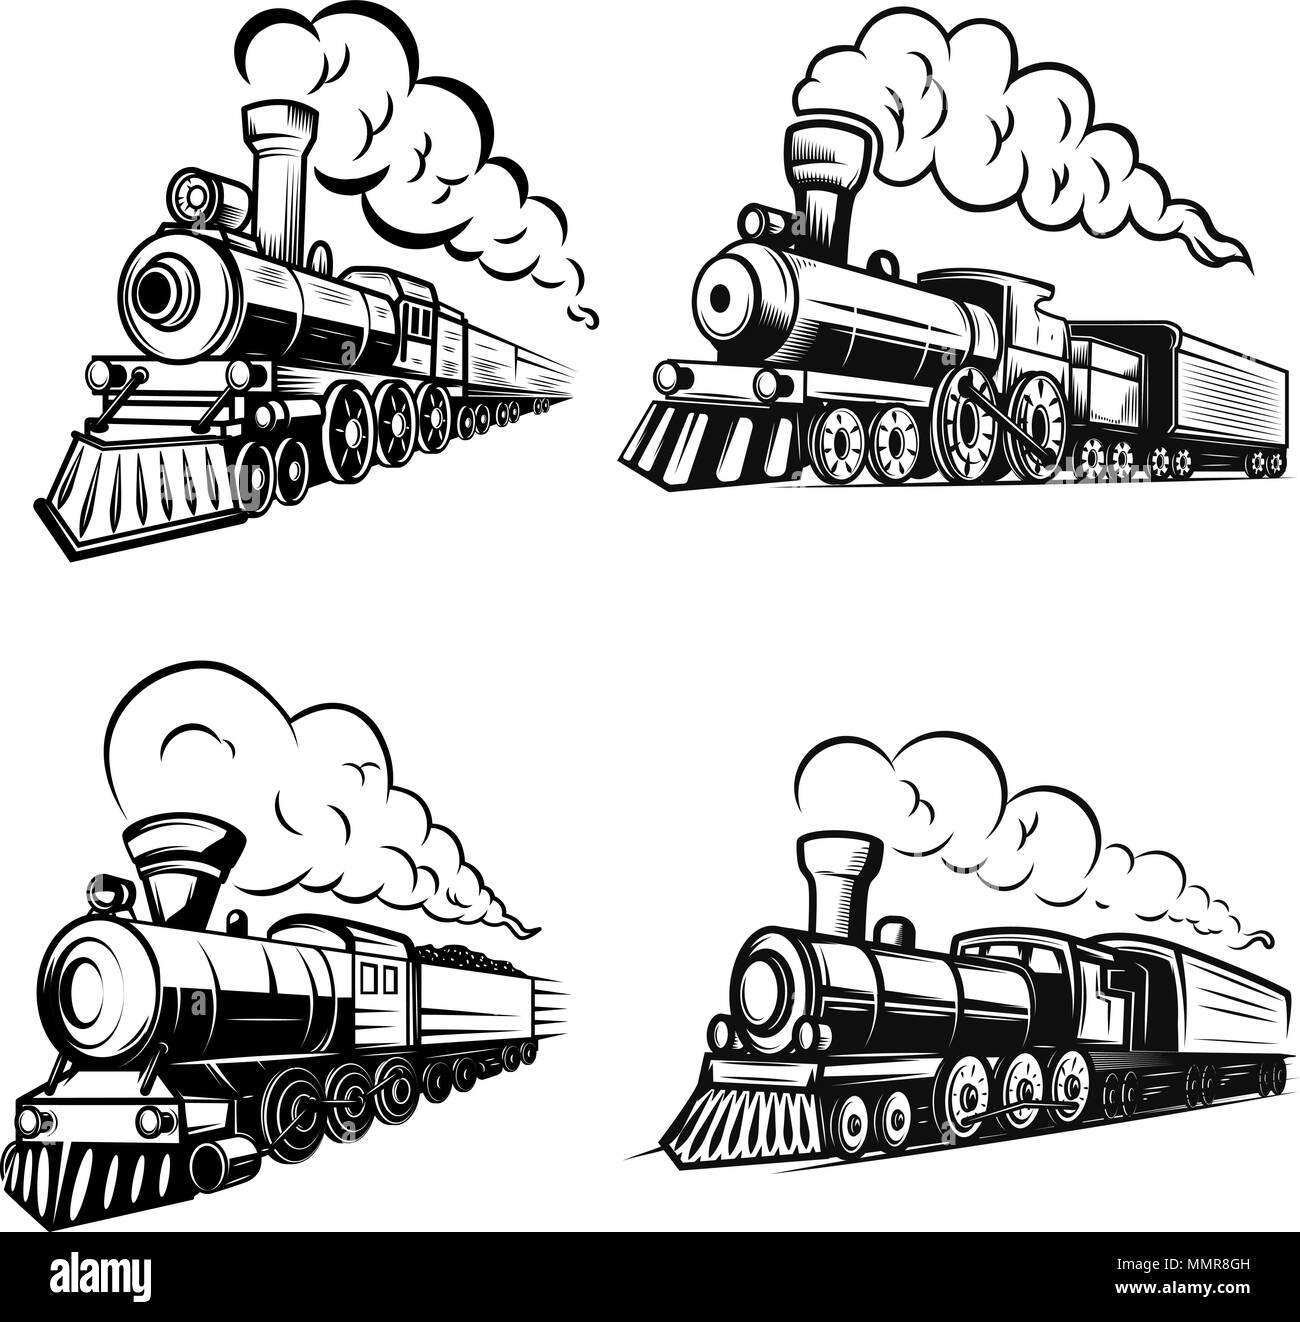 Set of retro locomotives on white background. Design elements for logo, label, emblem, sign. Vector image Stock Vector